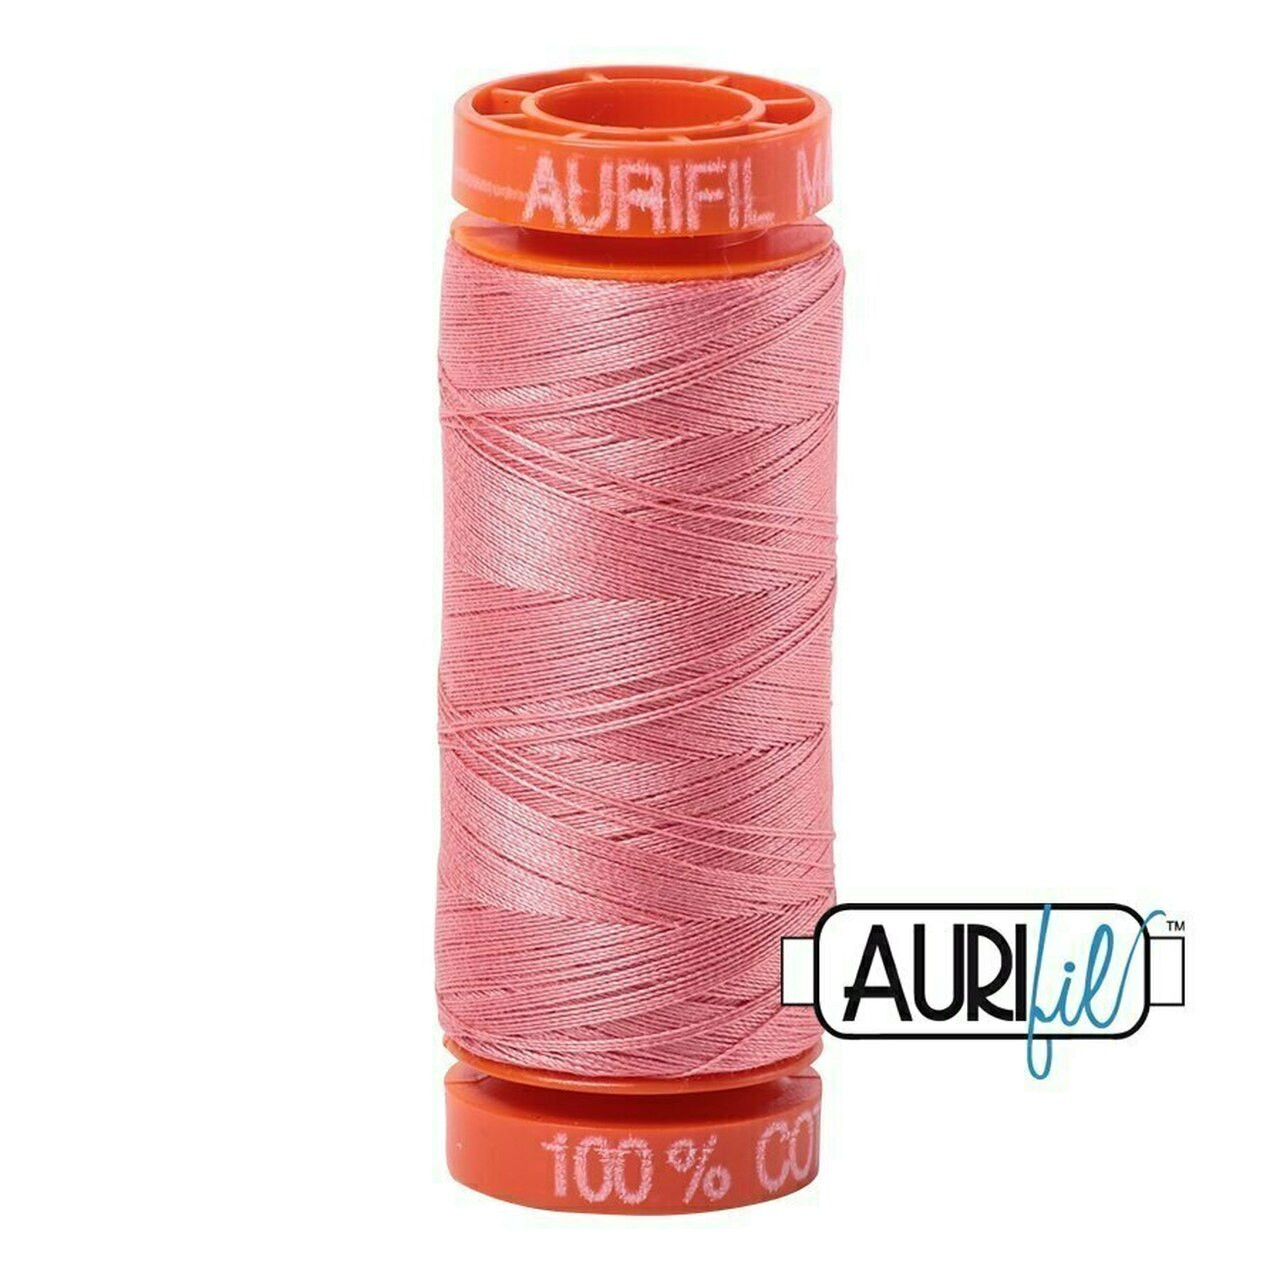 Aurifil 2435 - Peachy Pink